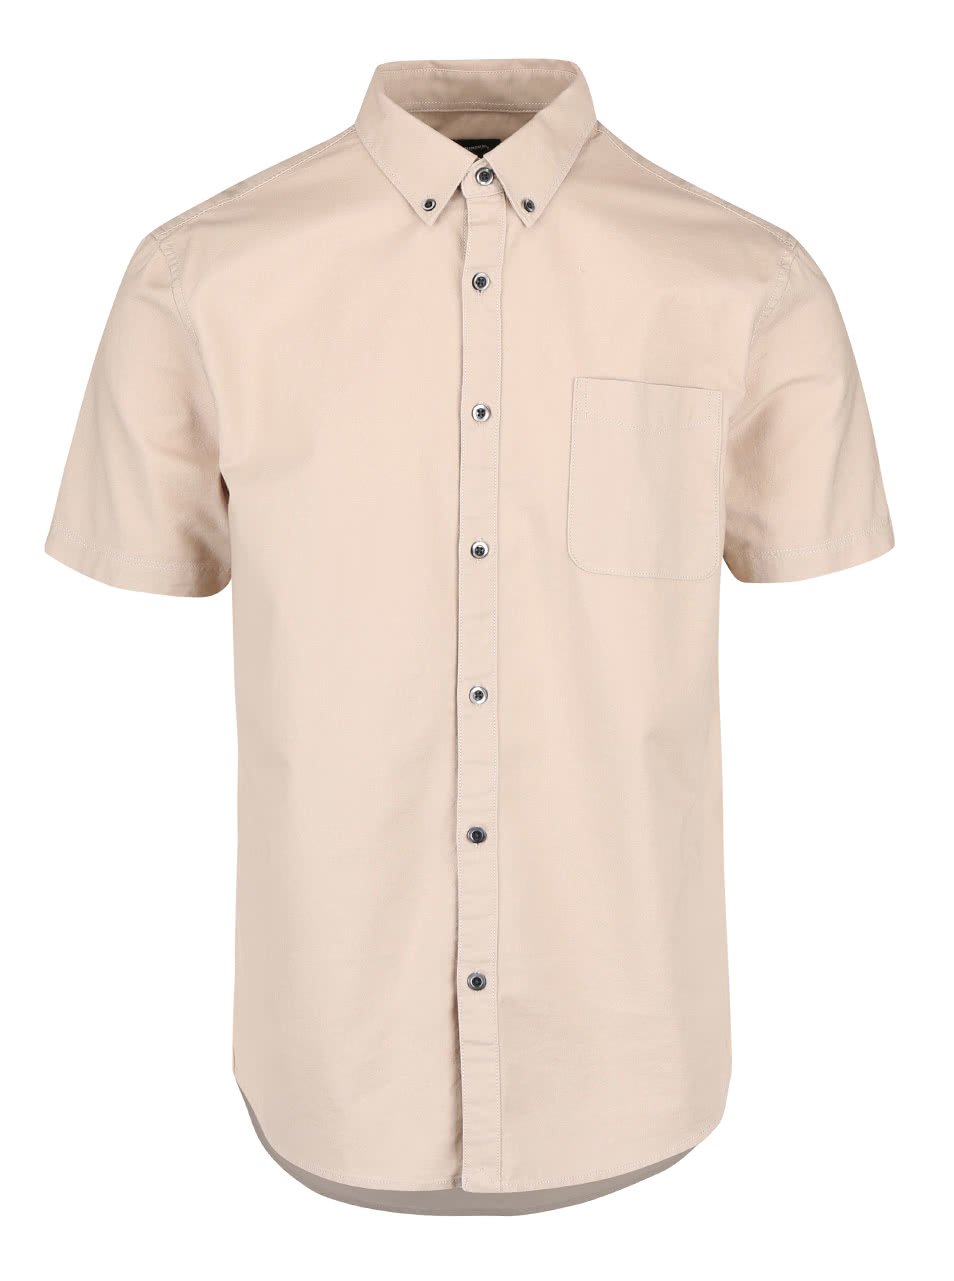 Béžová košile s krátkým rukávem Burton Menswear London